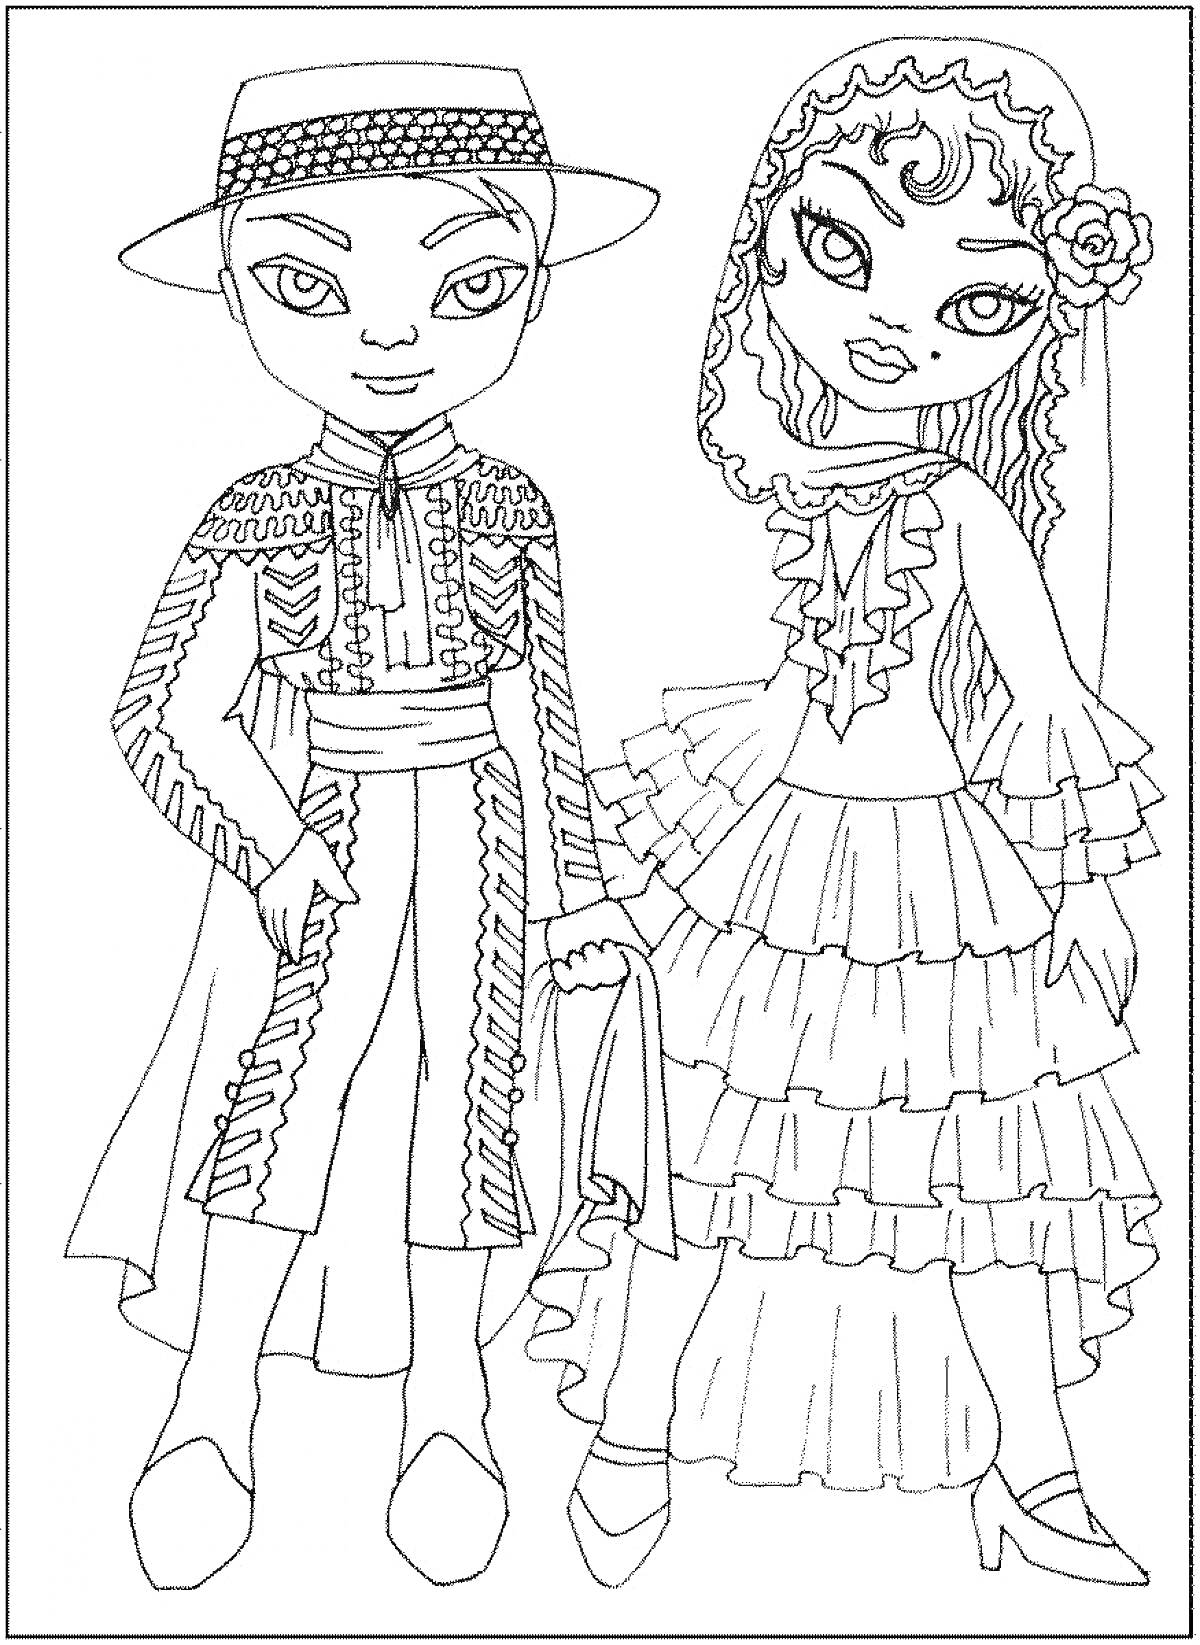 Раскраска Дети в традиционных костюмах, мальчик в костюме с шляпой и девочка в платье с оборками и цветком в волосах